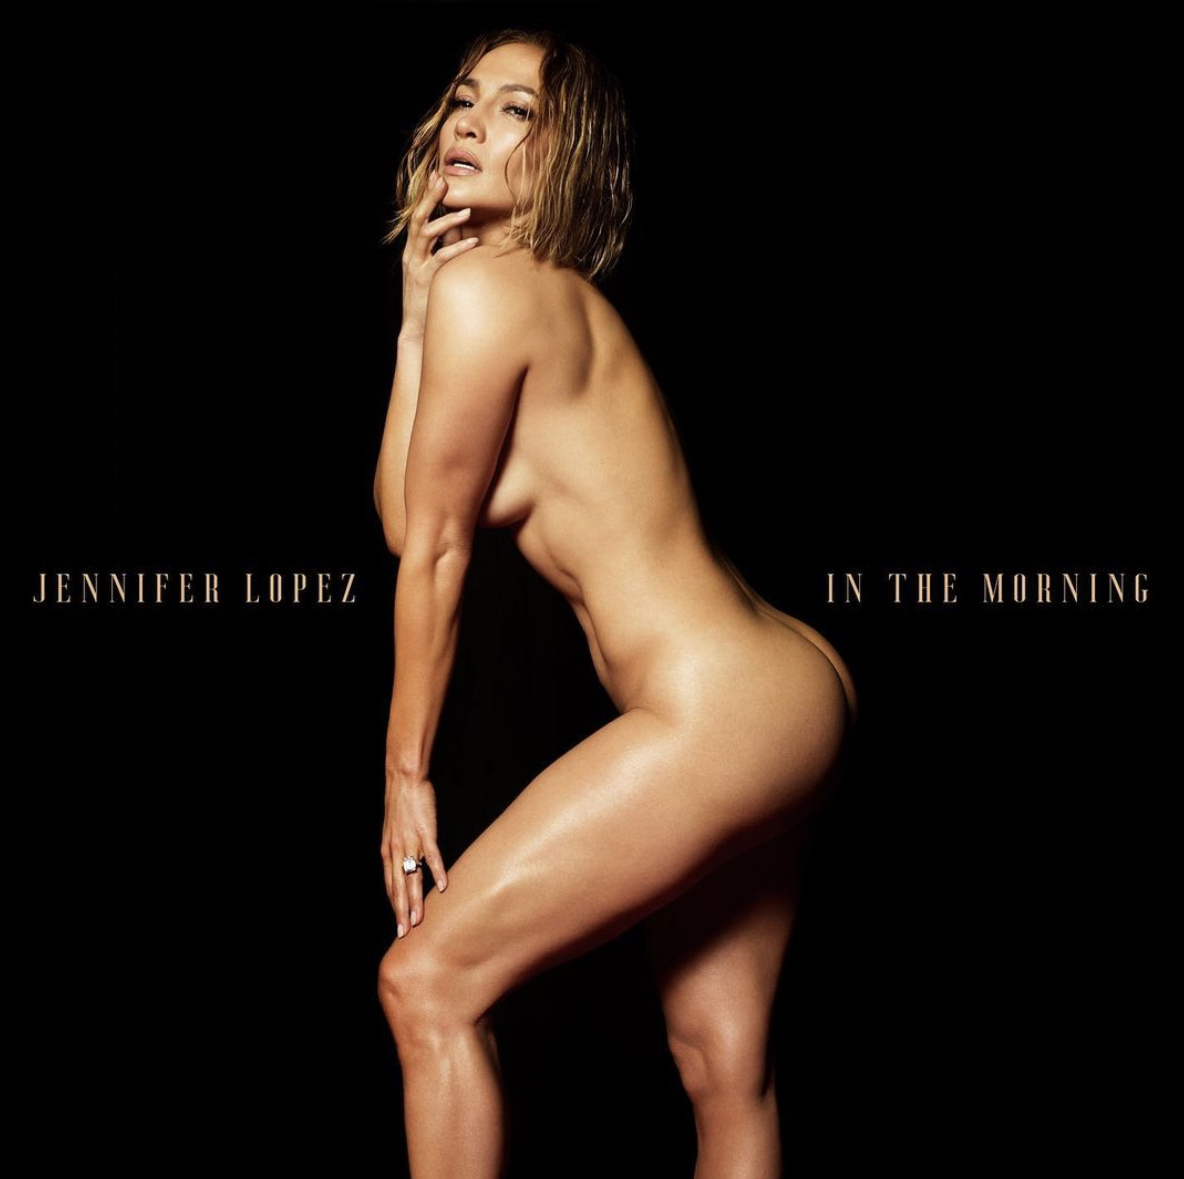 Jennifer Lopez nue en couverture de son nouveau single